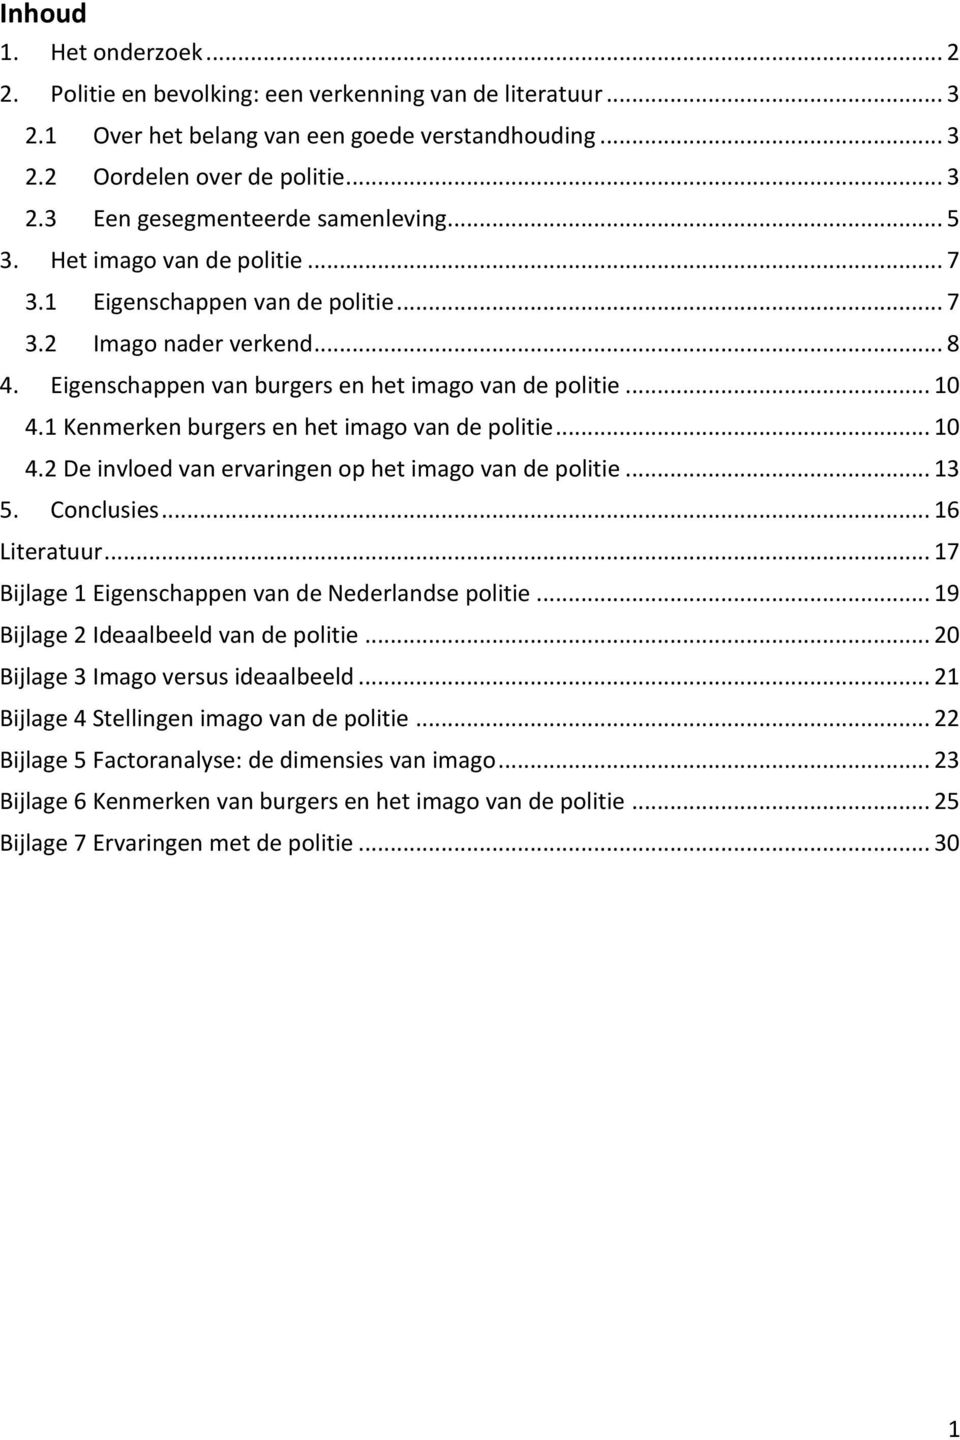 Kenmerken burgers en het imago van de politie... 0 4.2 De invloed van ervaringen op het imago van de politie... 3 5. Conclusies... 6 Literatuur... 7 Bijlage Eigenschappen van de Nederlandse politie.